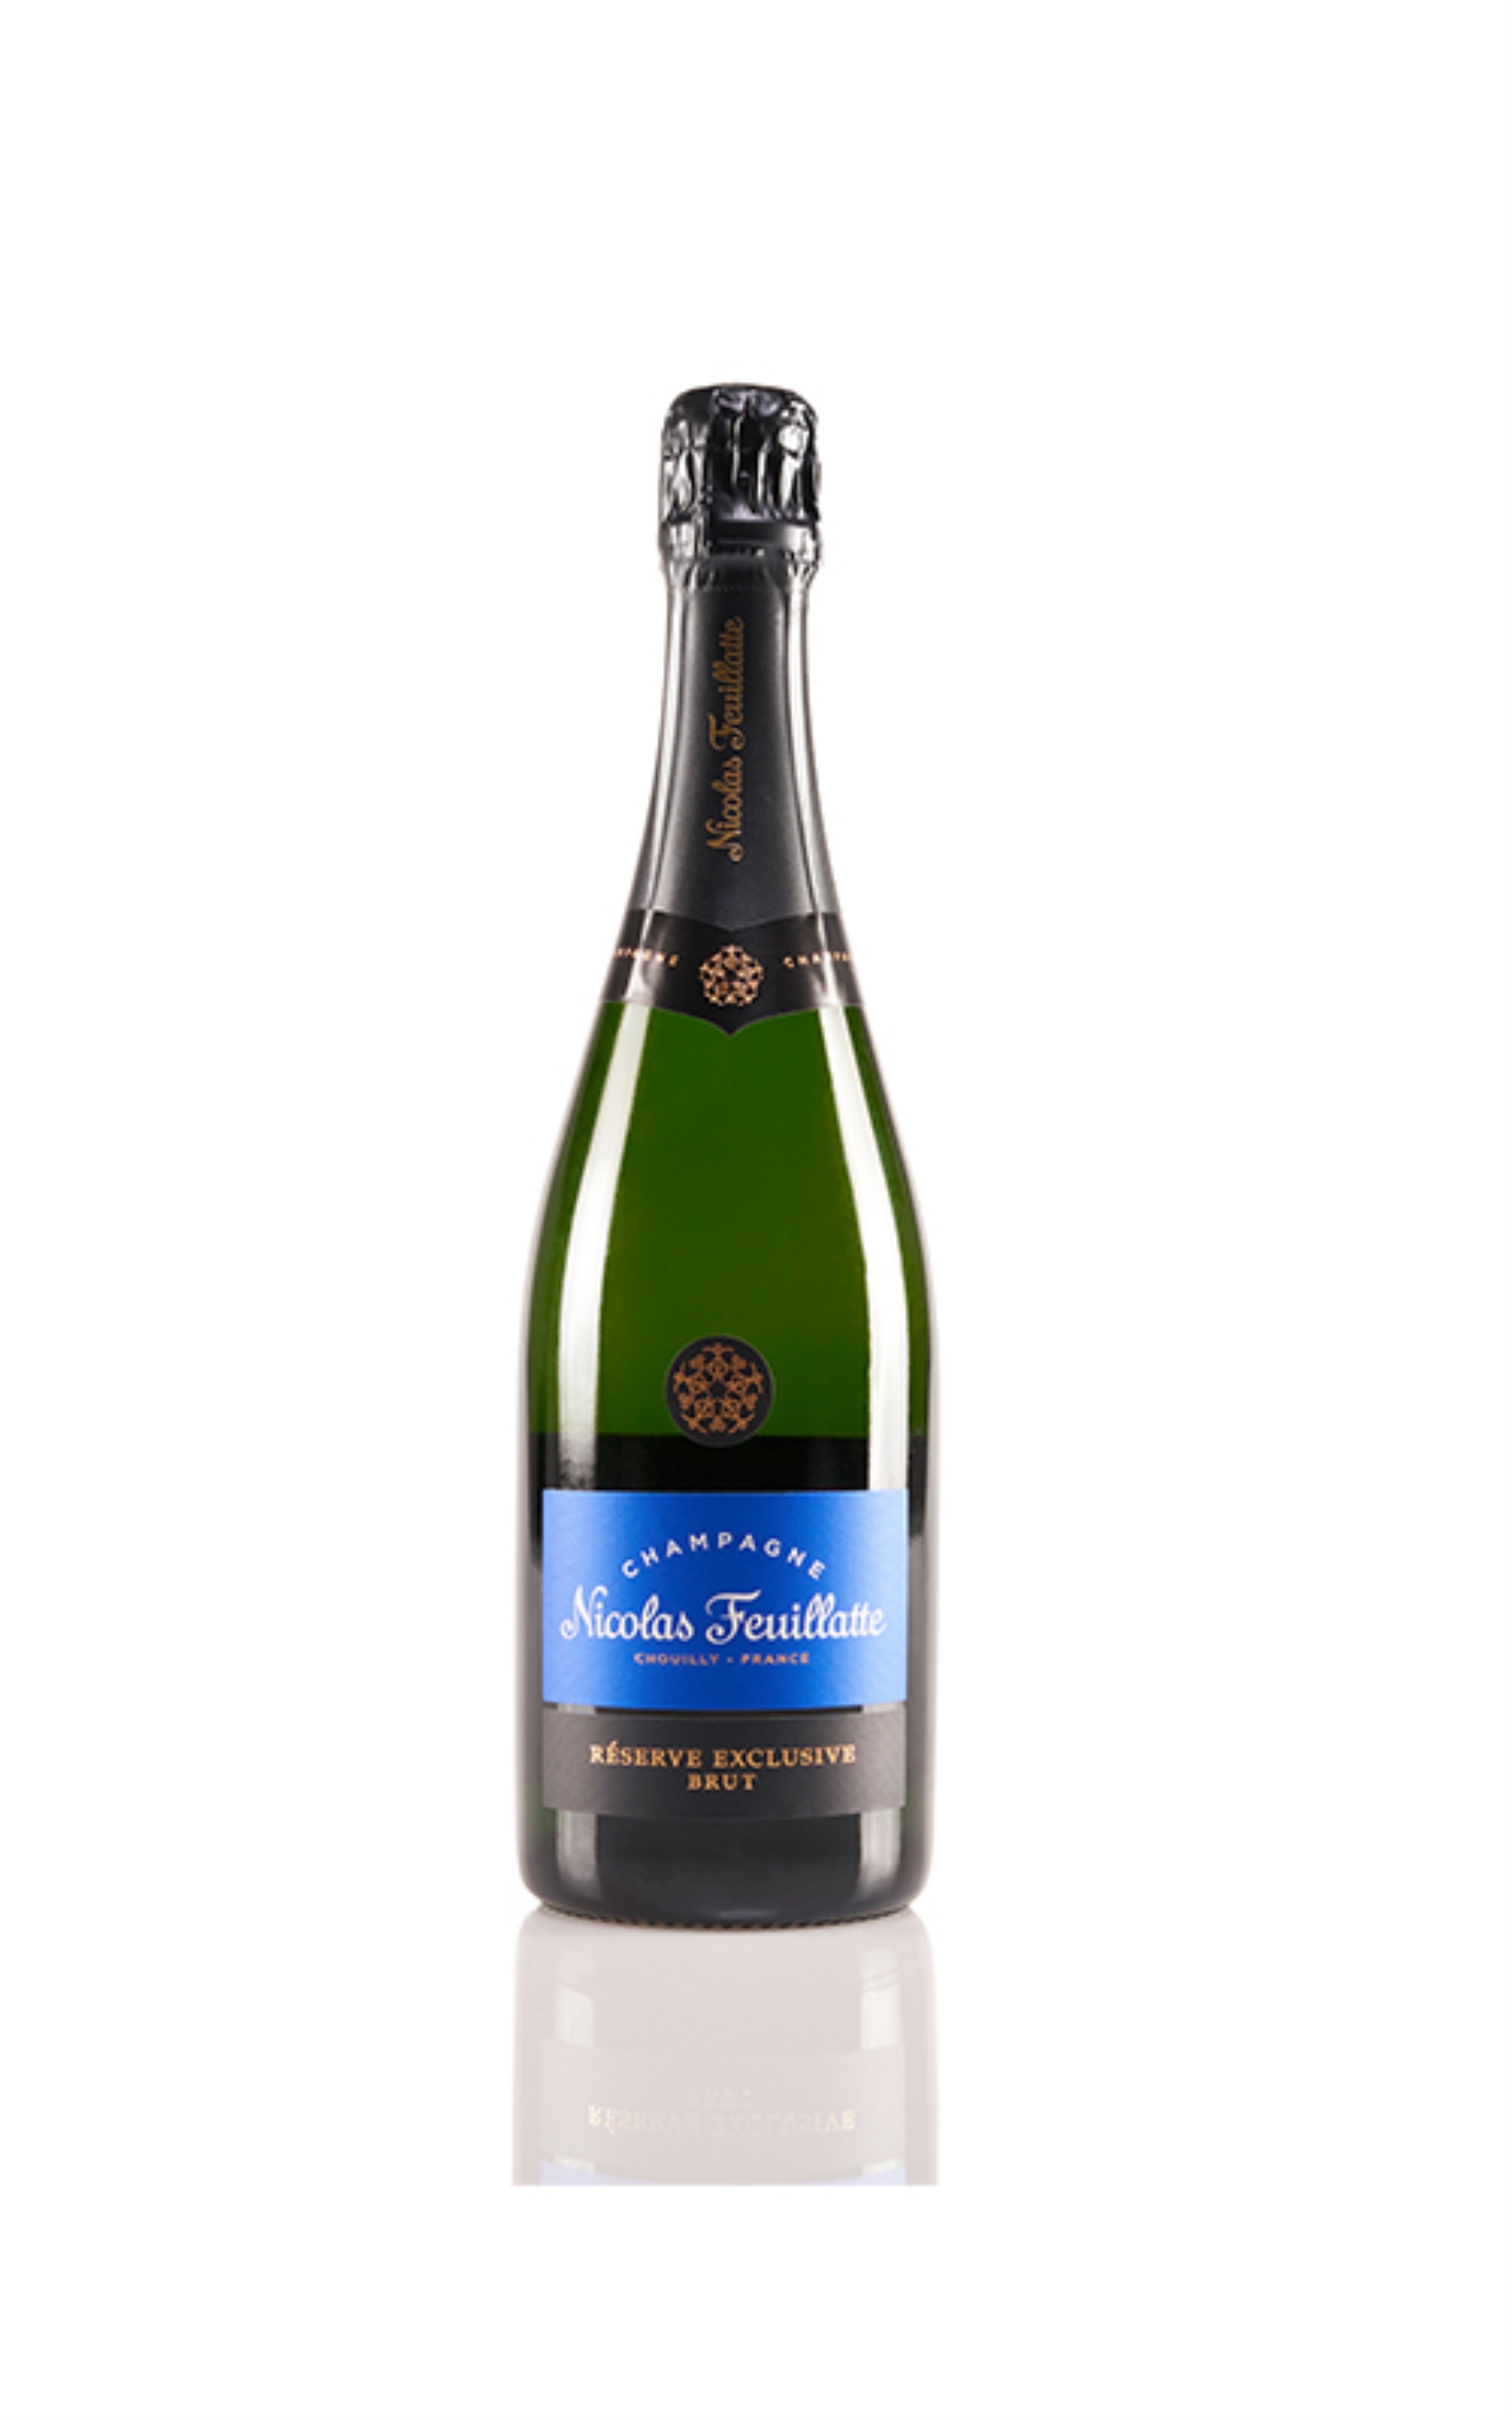 Champagne Nicolas Feuillatte Brut Rèserve Exclusive 0,75L